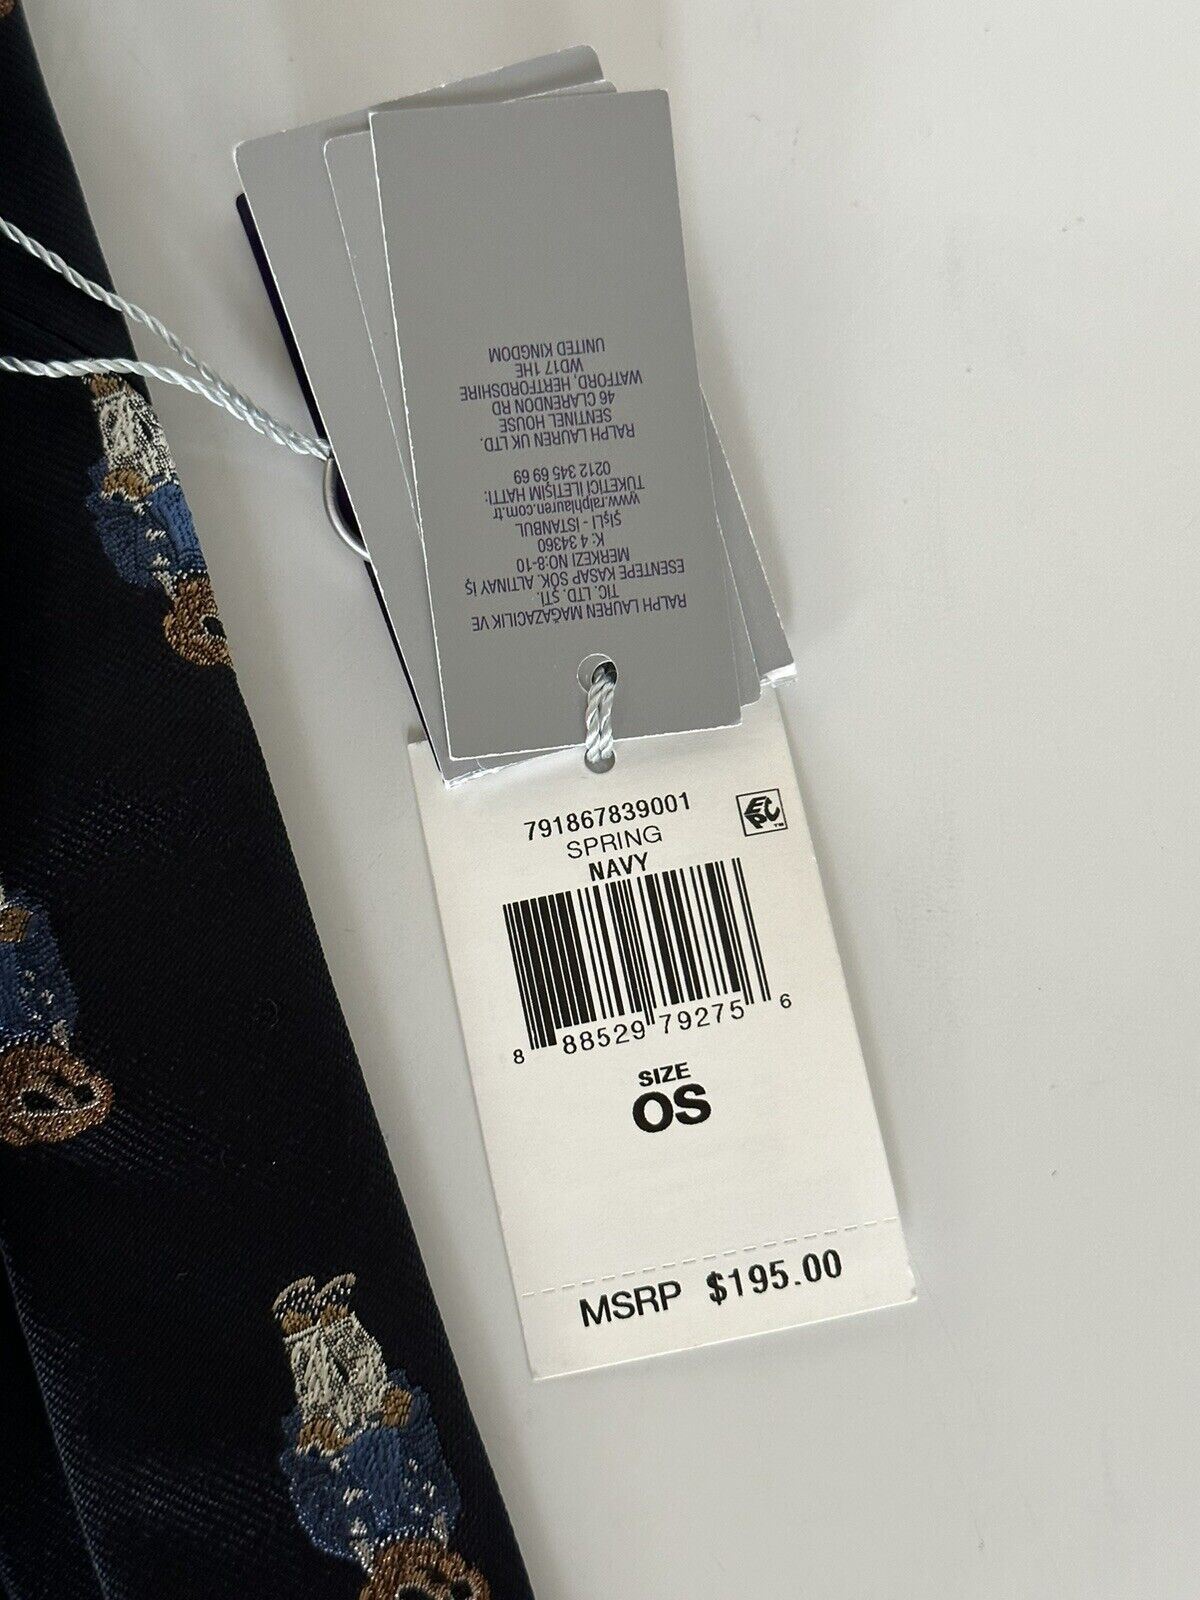 Neu mit Etikett: 195 $ Ralph Lauren Purple Label Bären-Krawatte, 100 % Seide, handgefertigt, Italien, Blau 